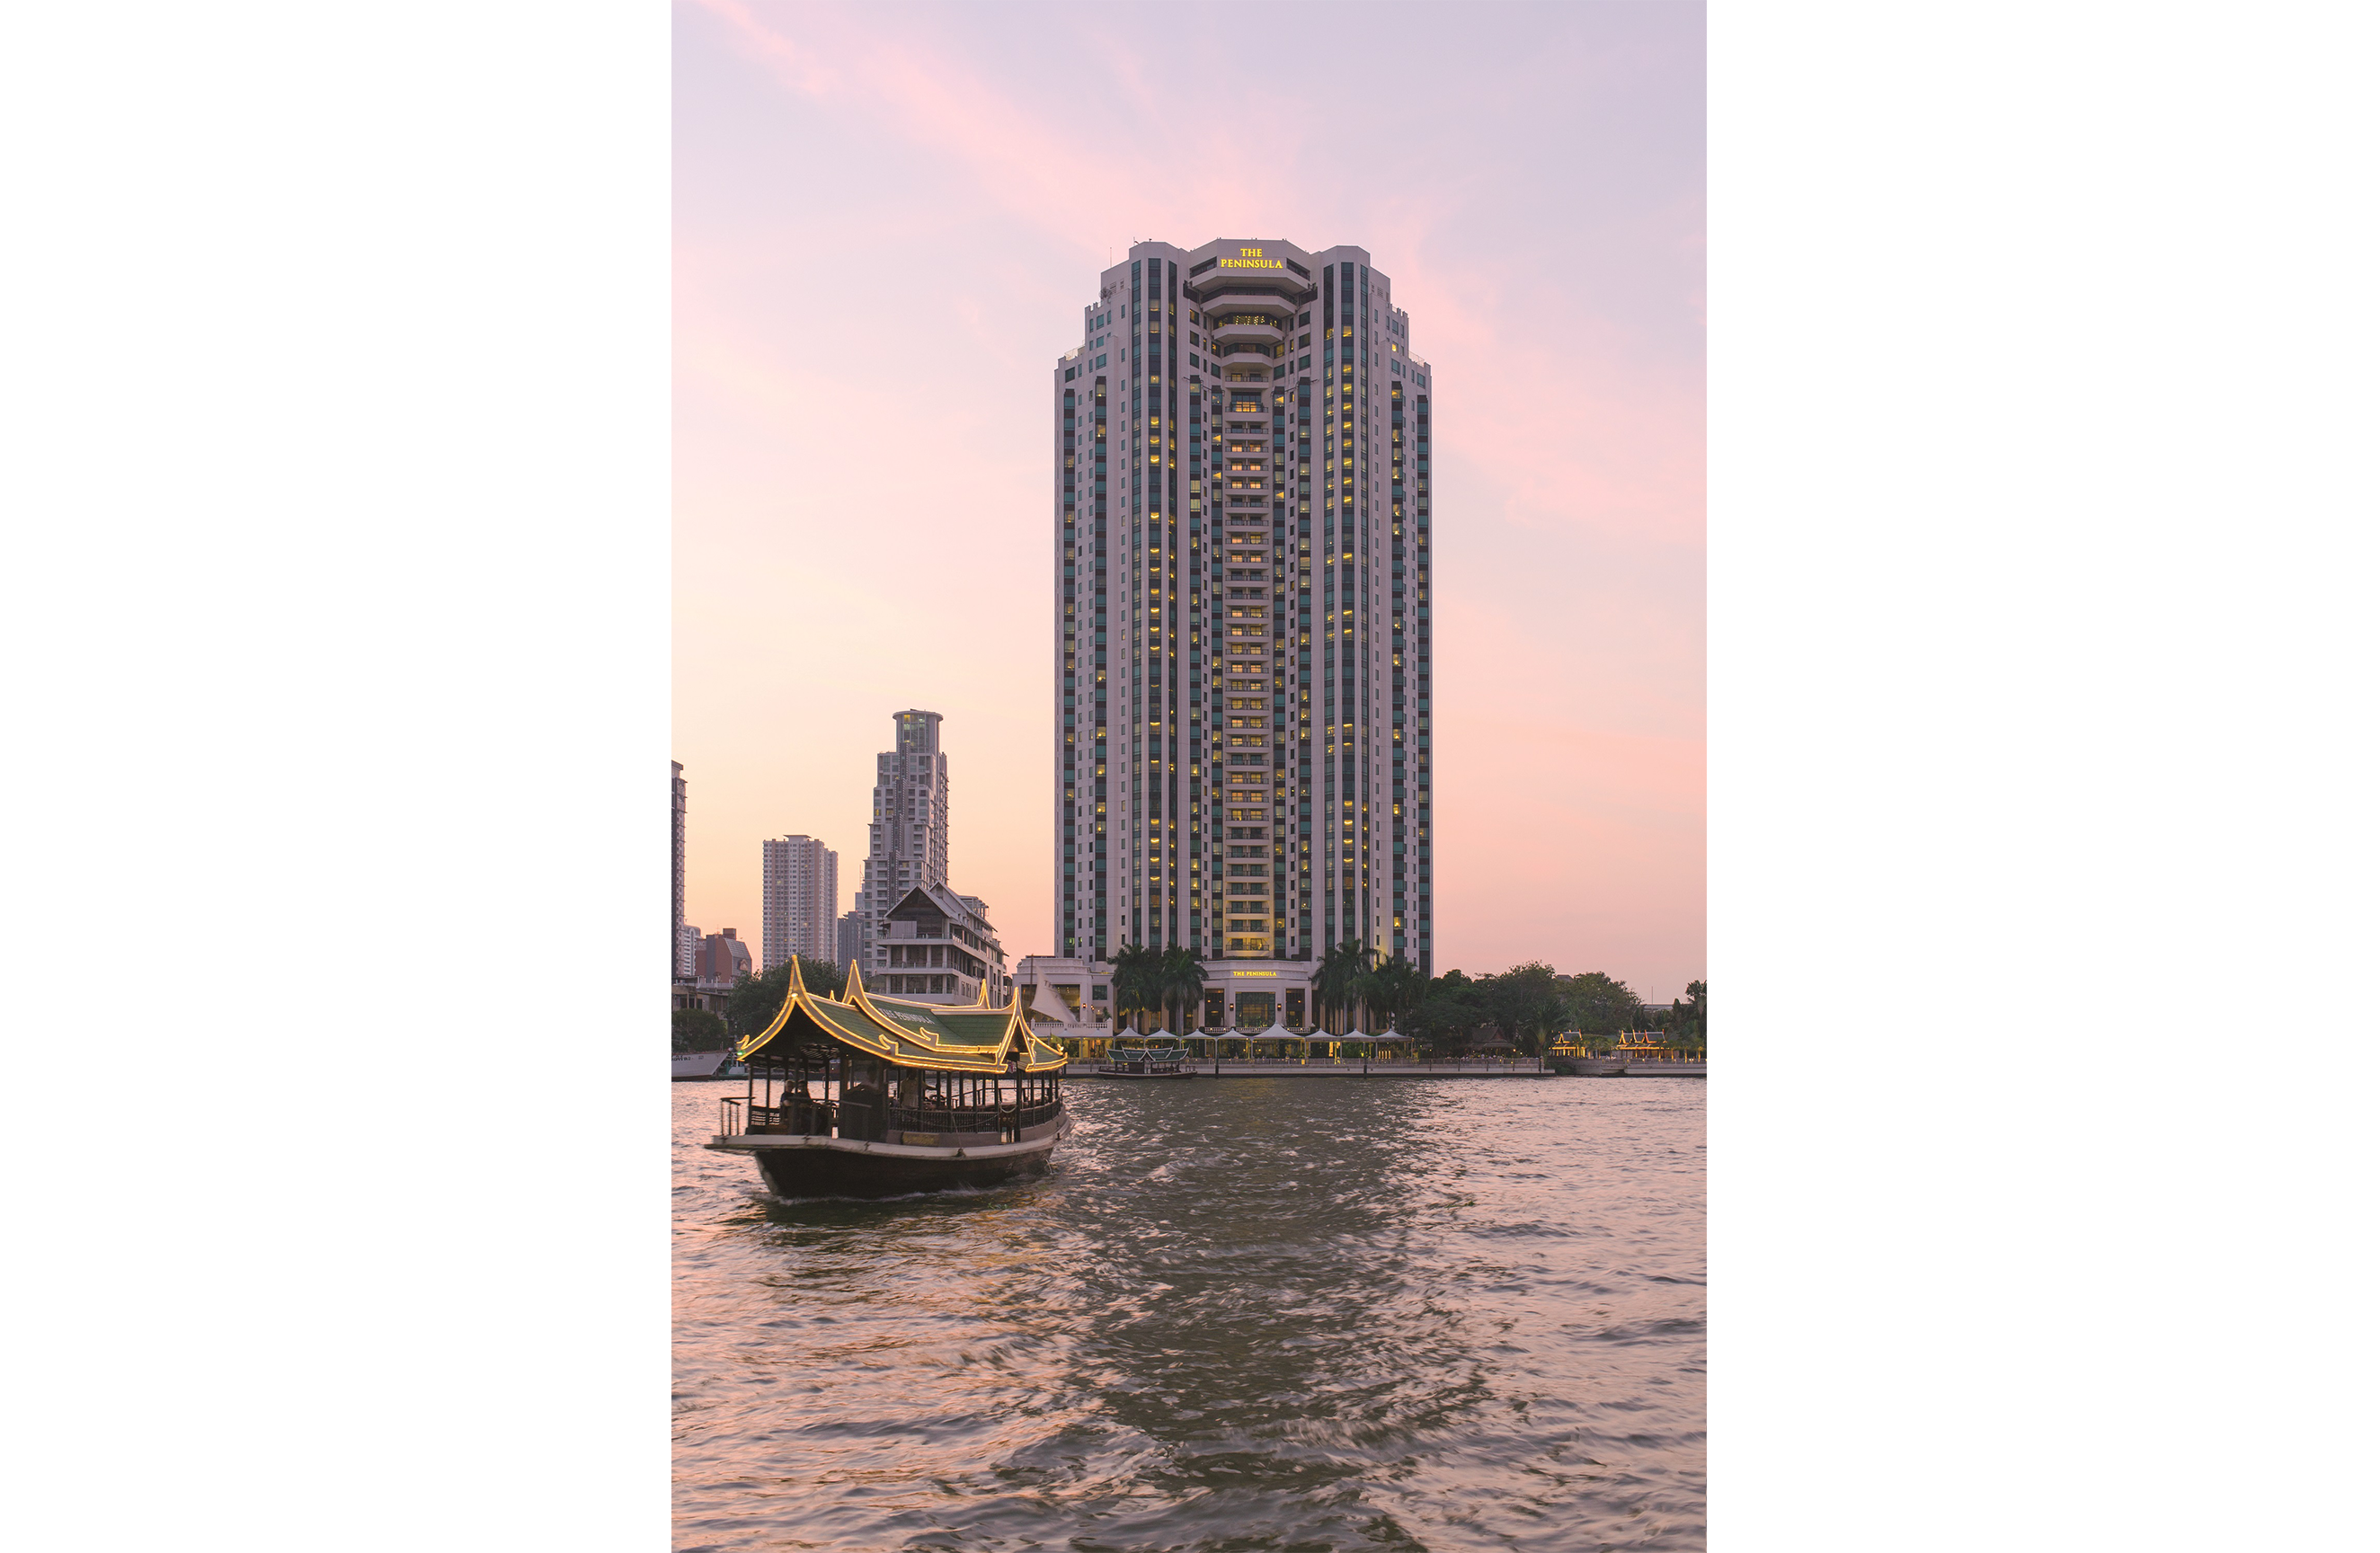 The Peninsula Bangkok and boat